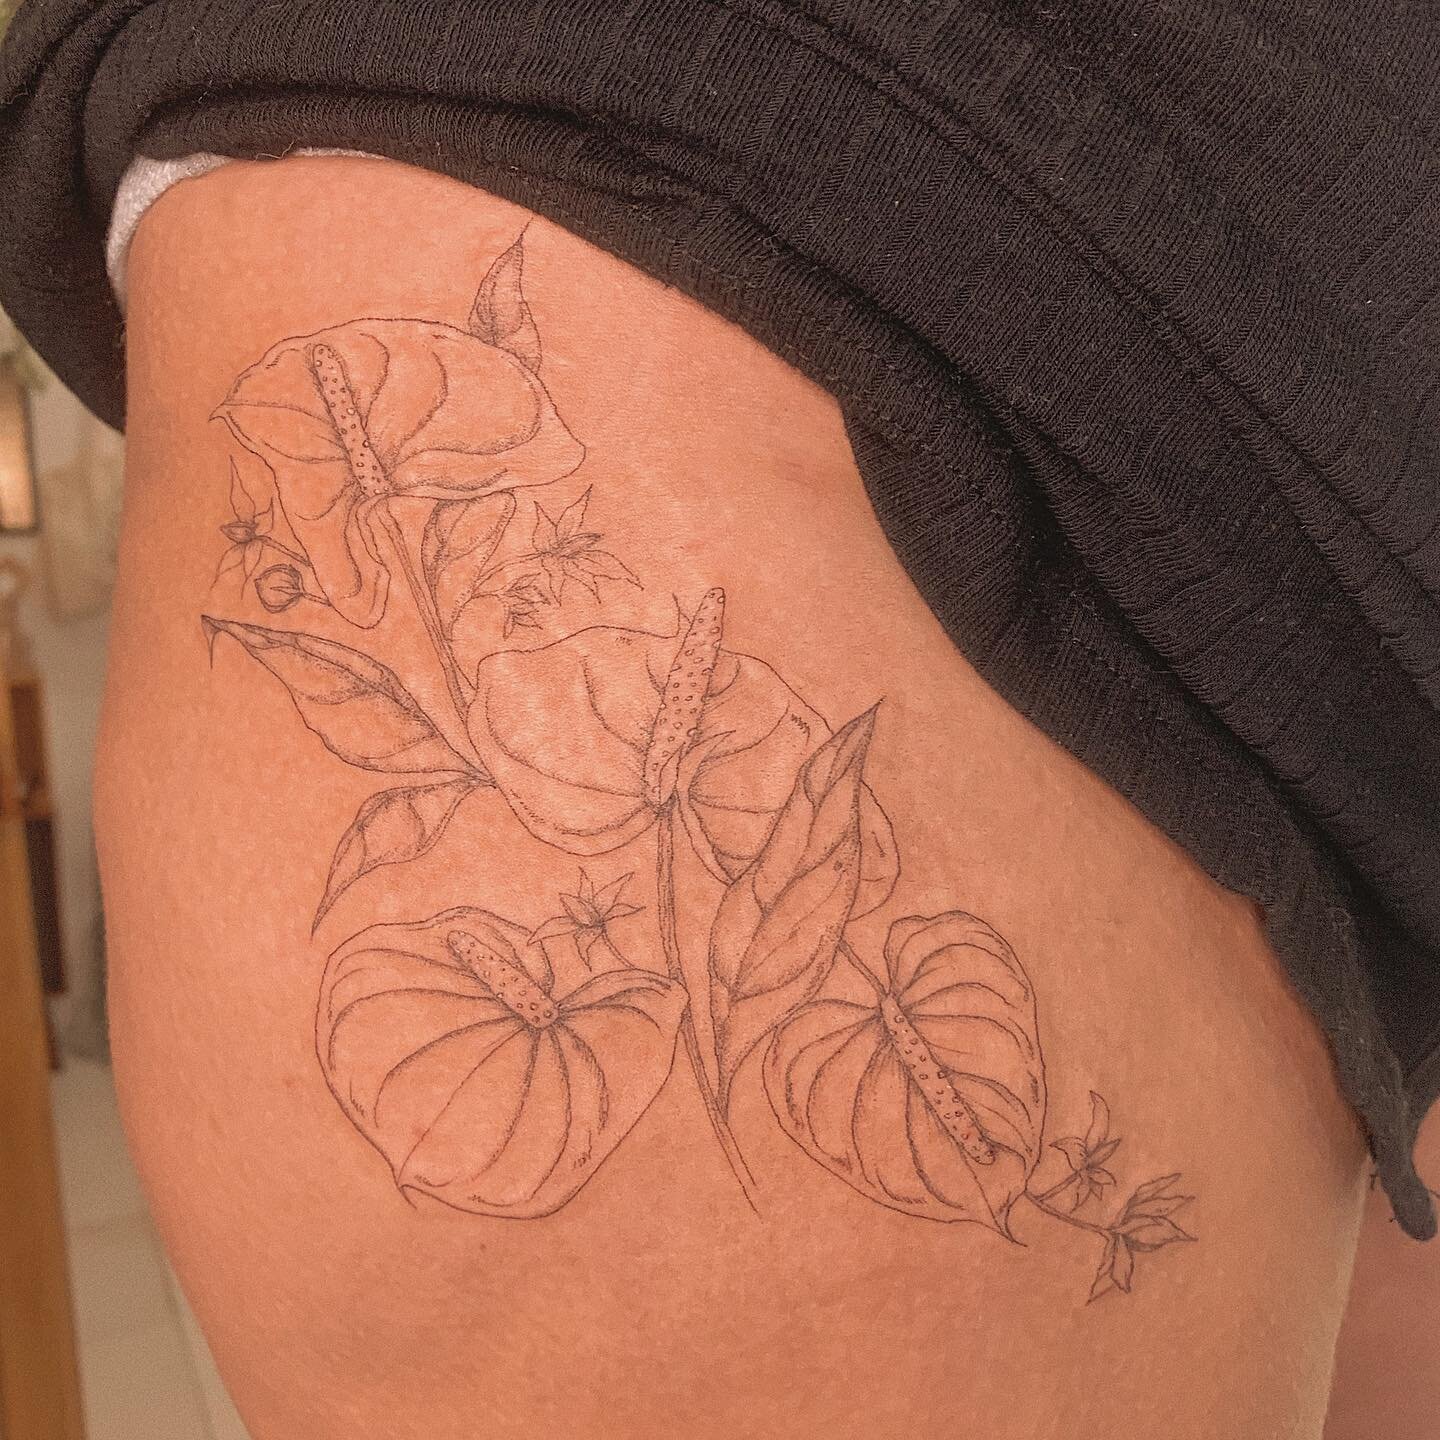 A primeira tatuagem da Anna &eacute; uma homenagem ao jardim do av&ocirc;: com Ant&uacute;rios e flores de tomate! Obrigada por esse projeto t&atilde;o lindo!
.
.
.
#anthurium #flowertattoo #ttt #tattoos #botanical #botanicalart #botanicaltattoo #tat